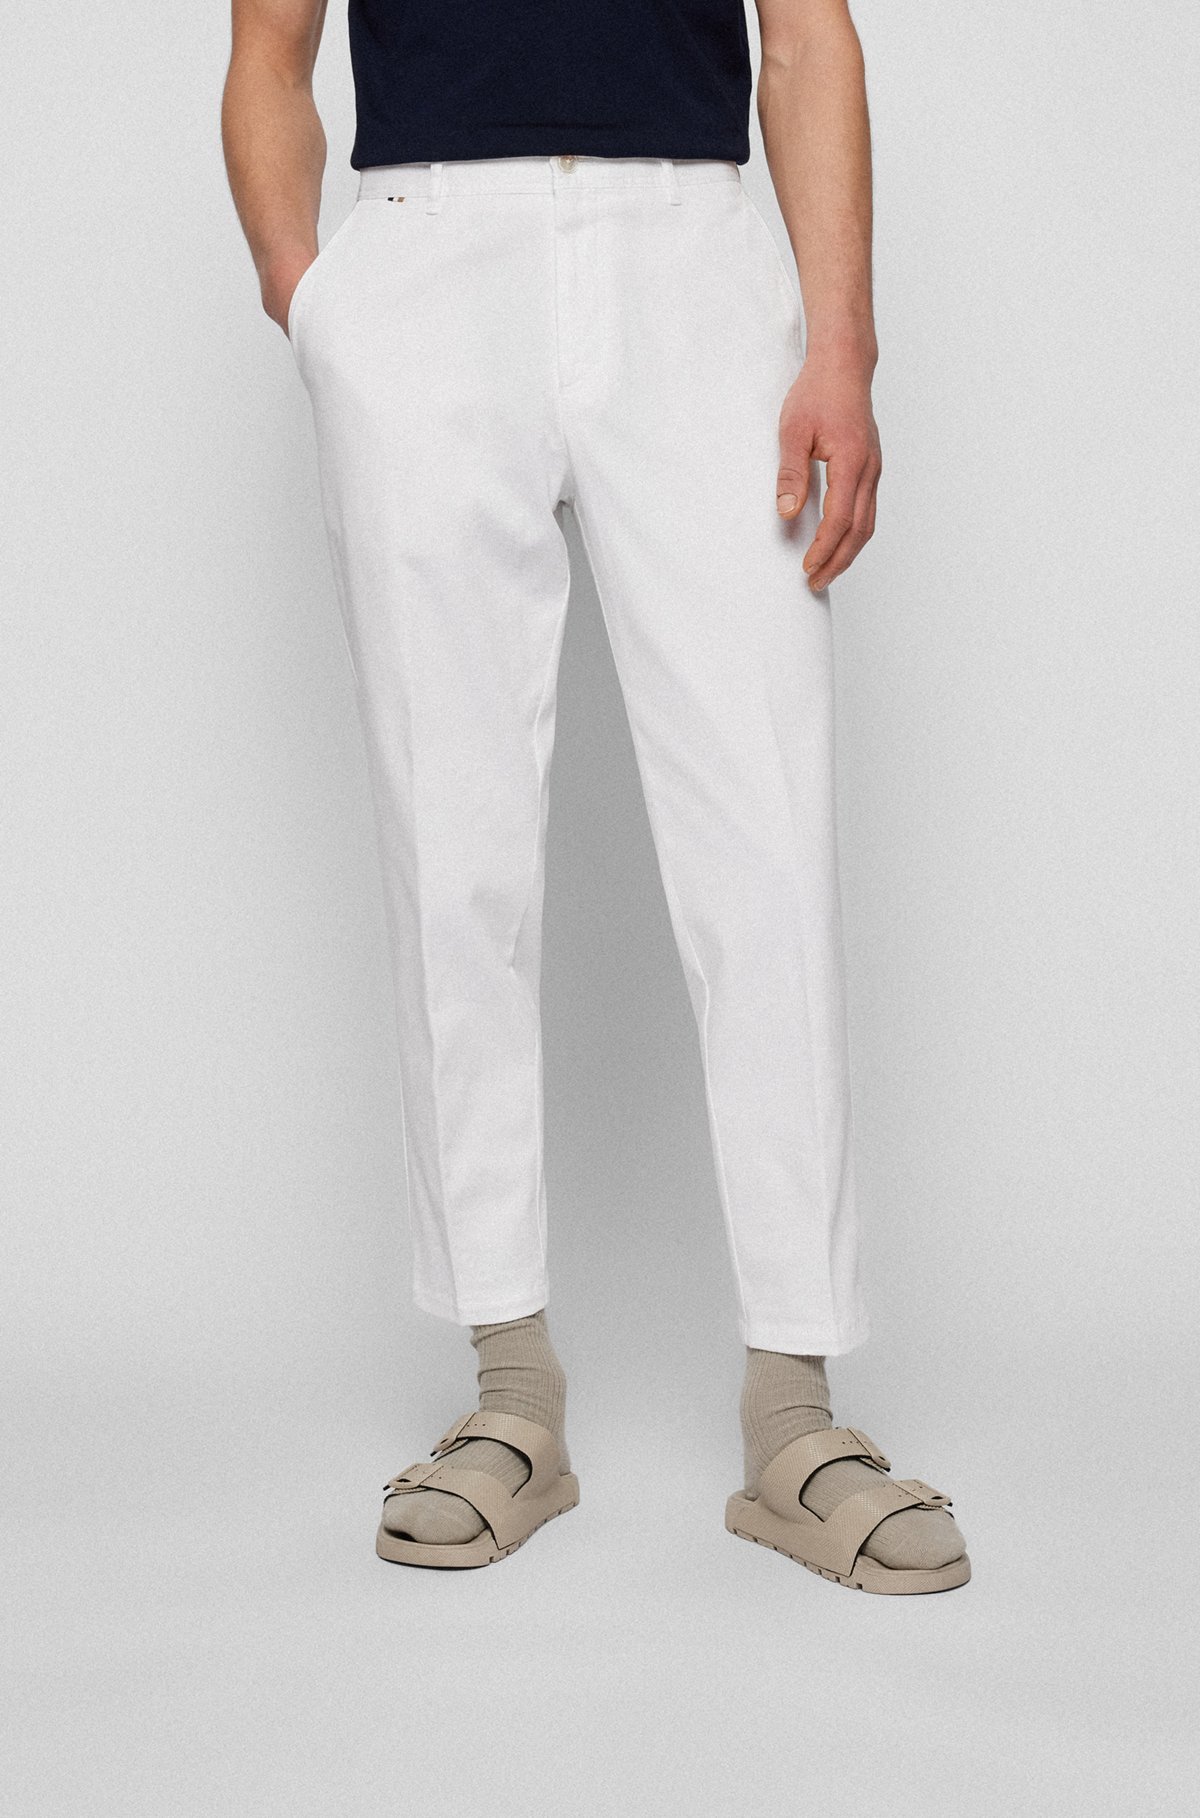 Pantaloni con fit affusolato in cotone elasticizzato a micromotivi, Bianco